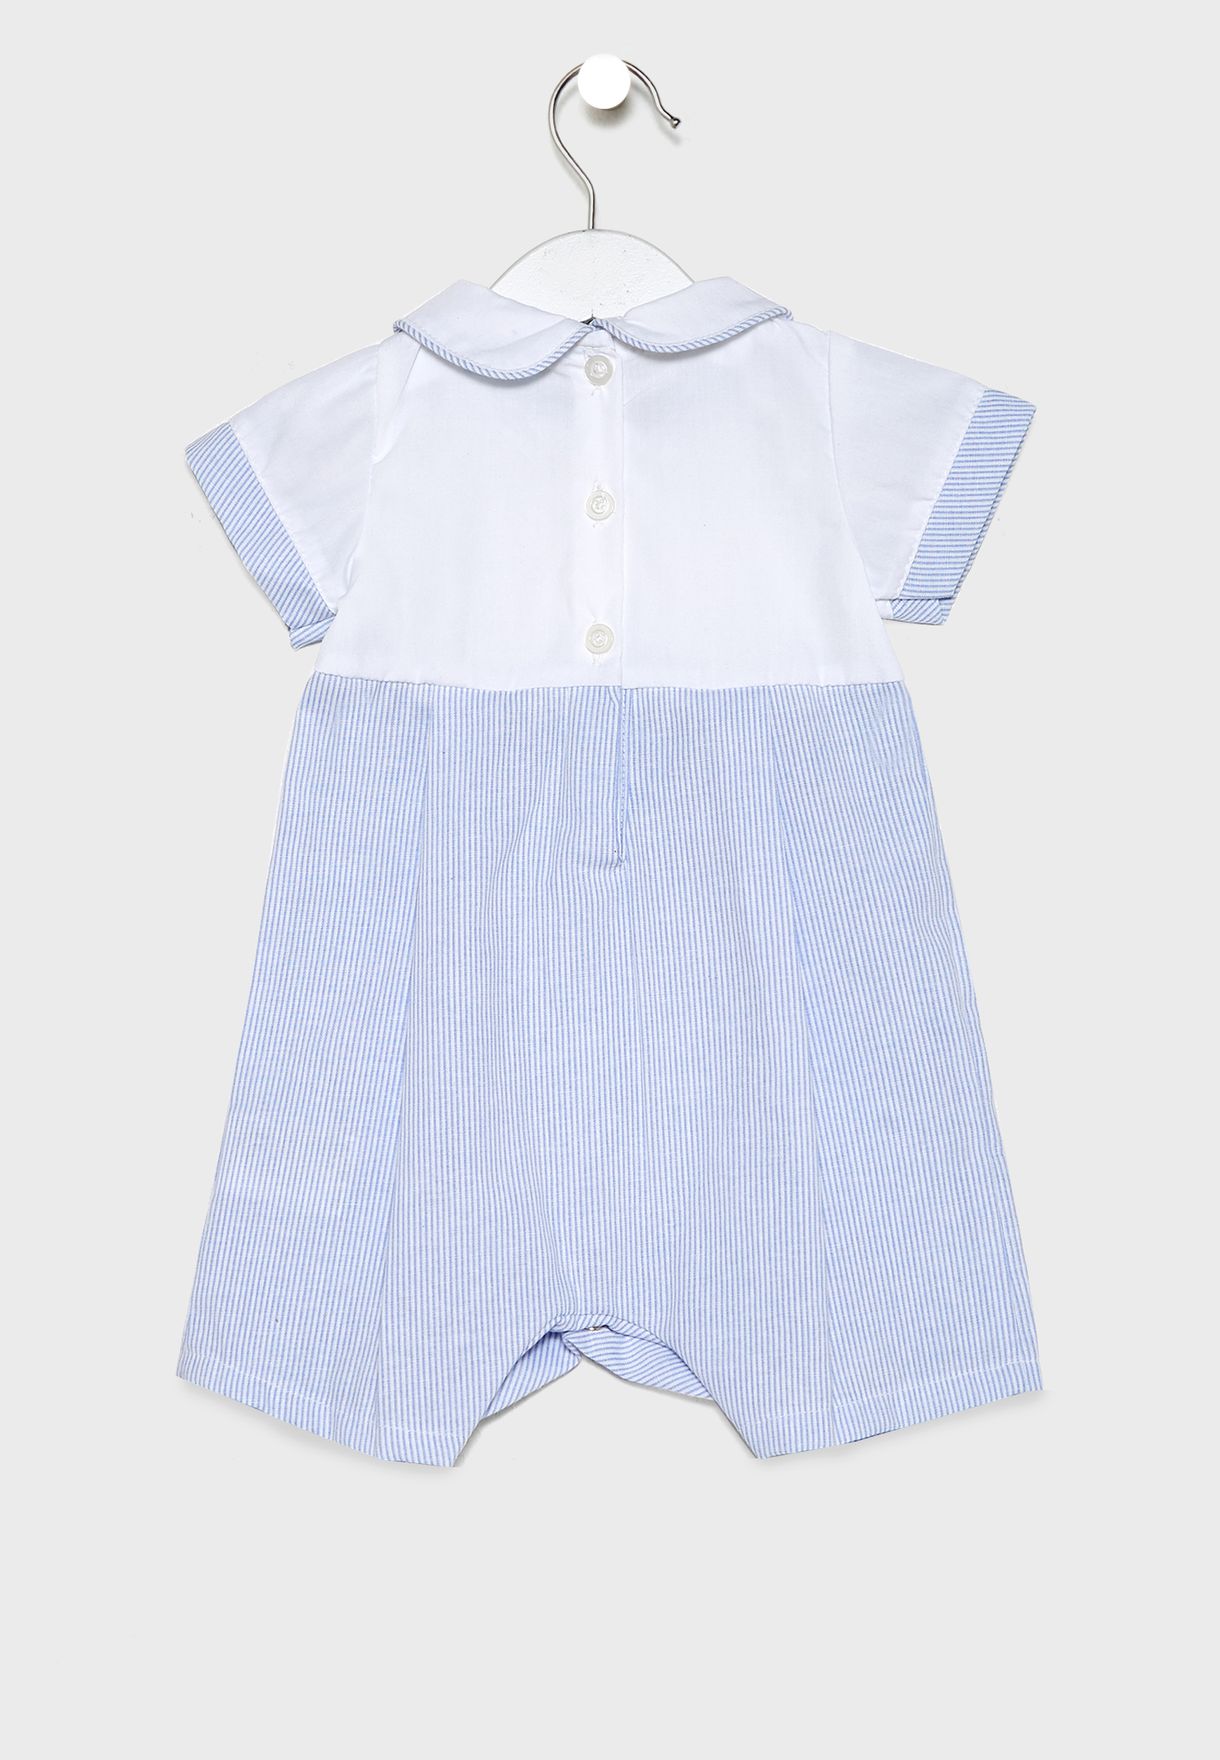 Infant Peter Pan Collar Dress + Shorts Set